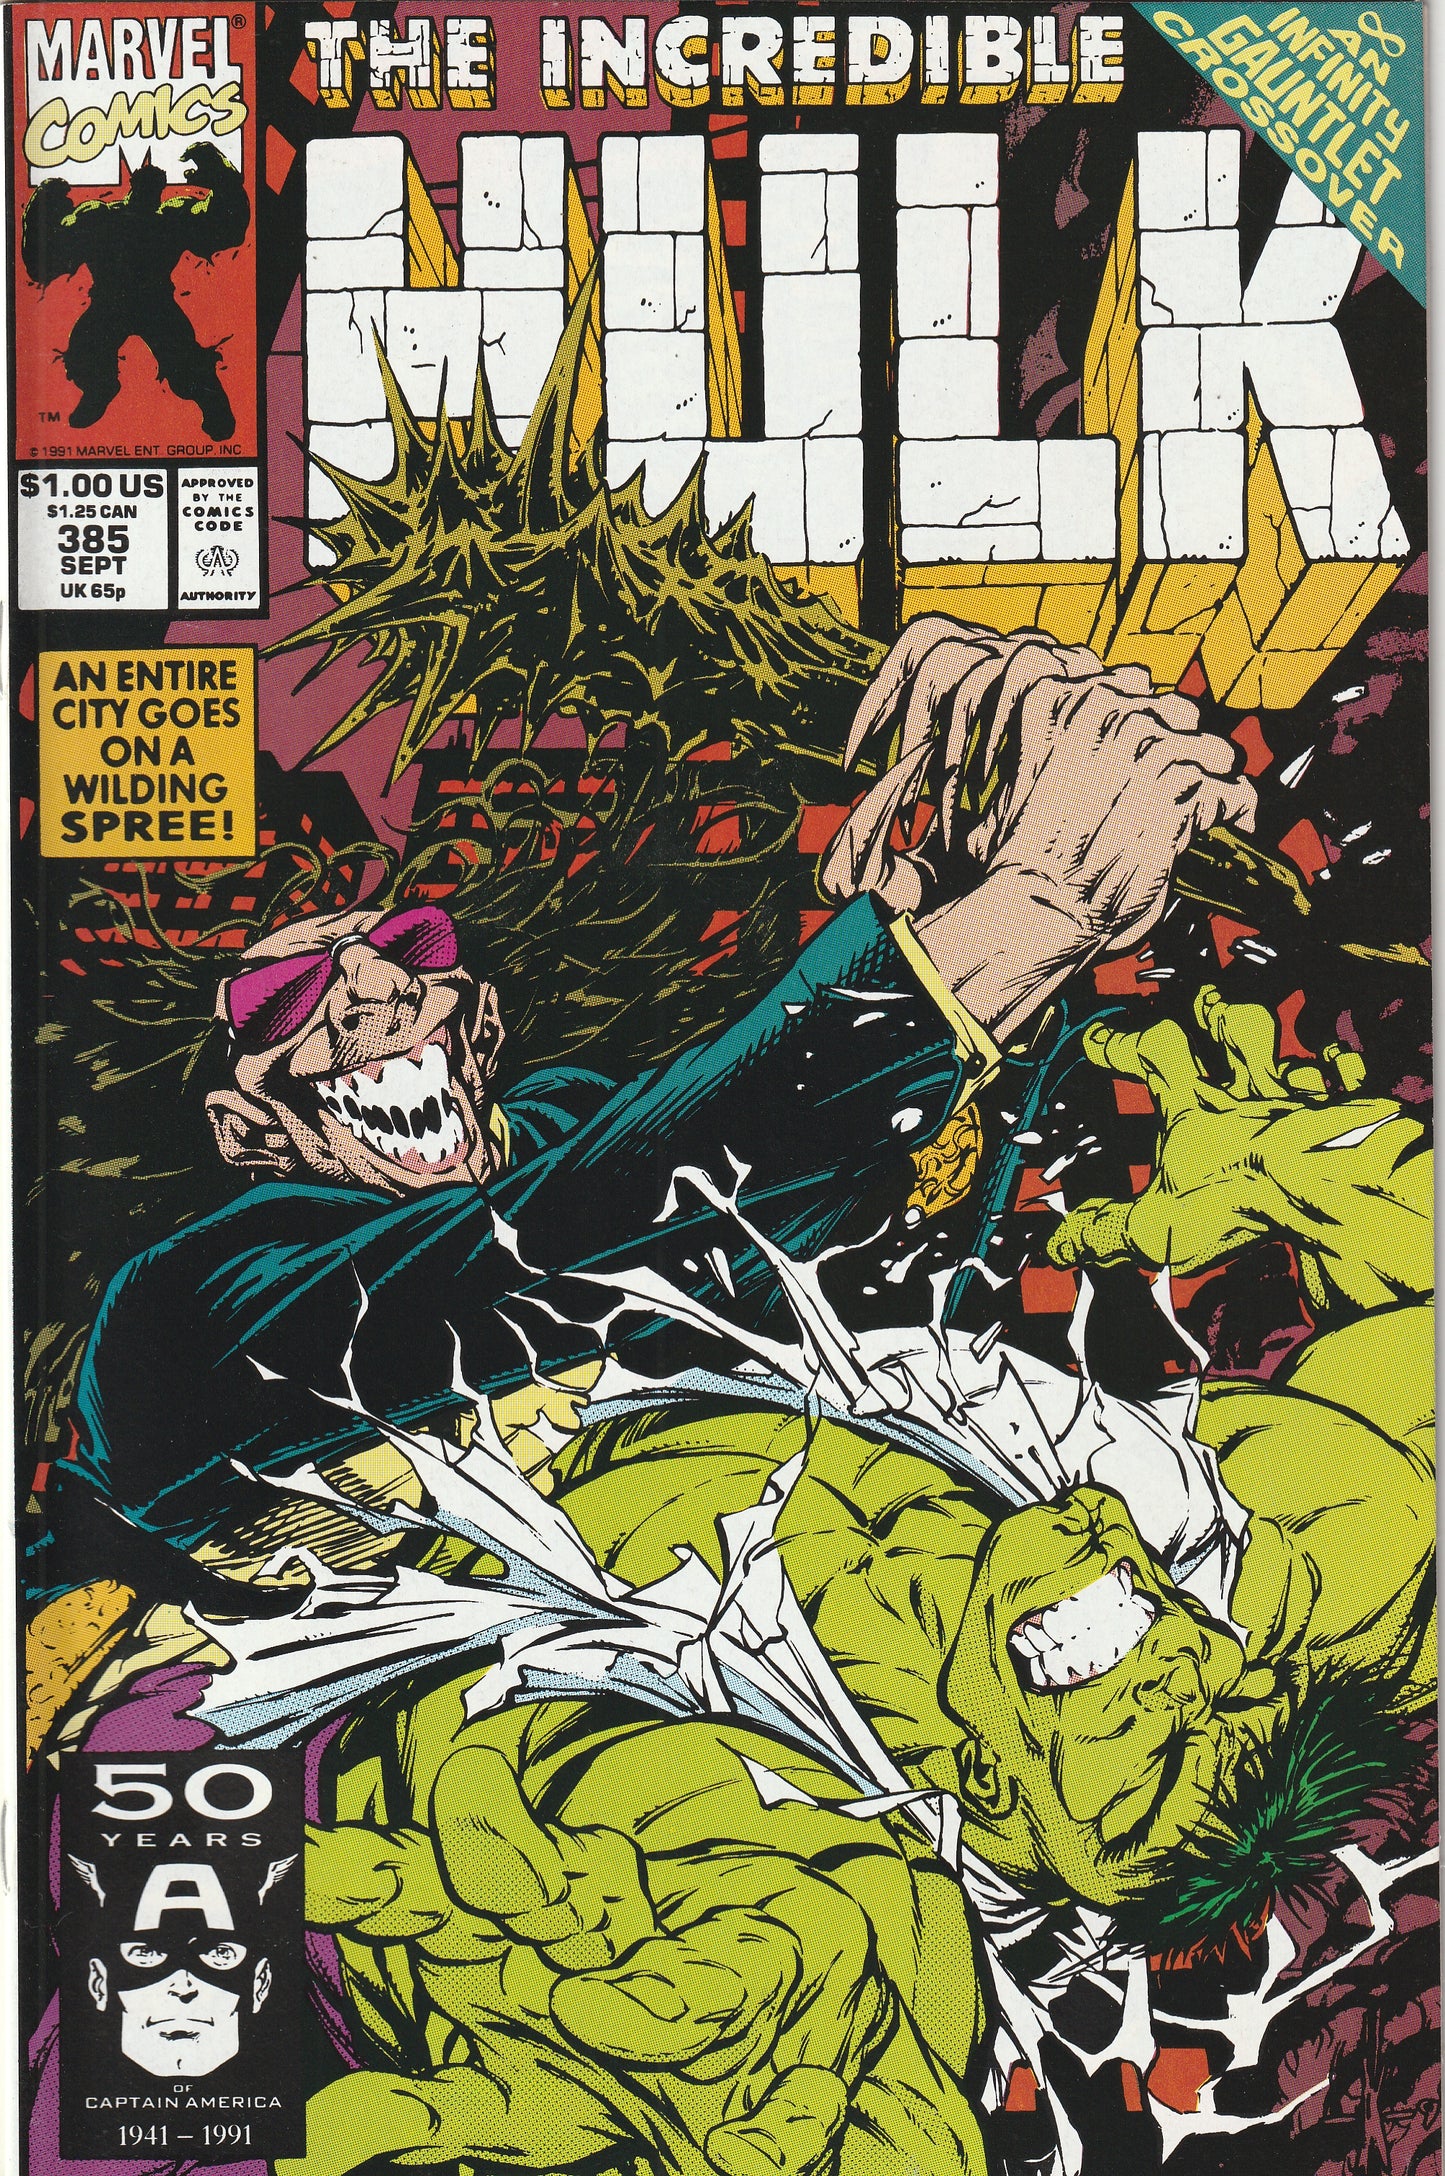 Incredible Hulk #385 (1991)